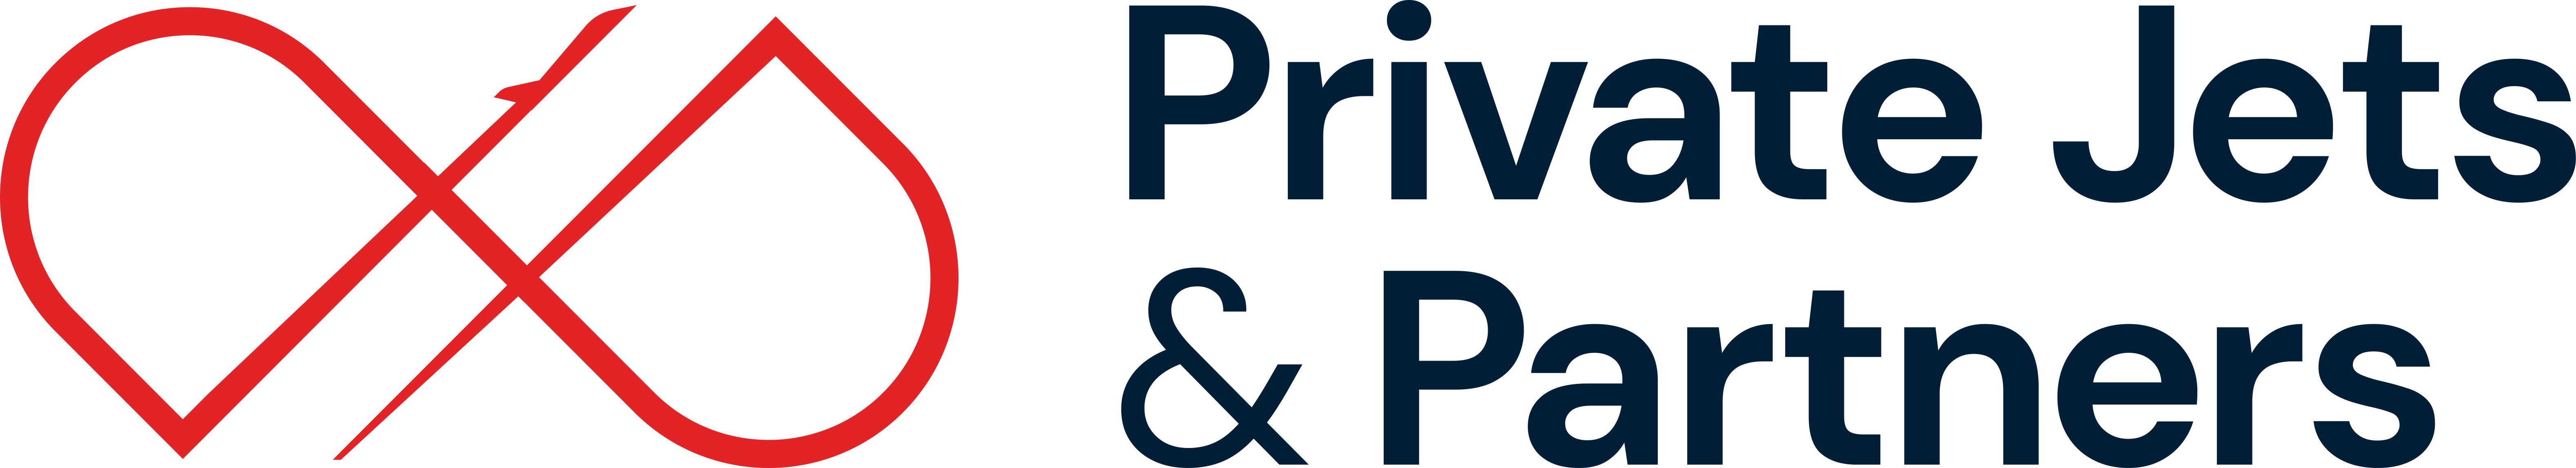 logo partenaire Jet privé - black